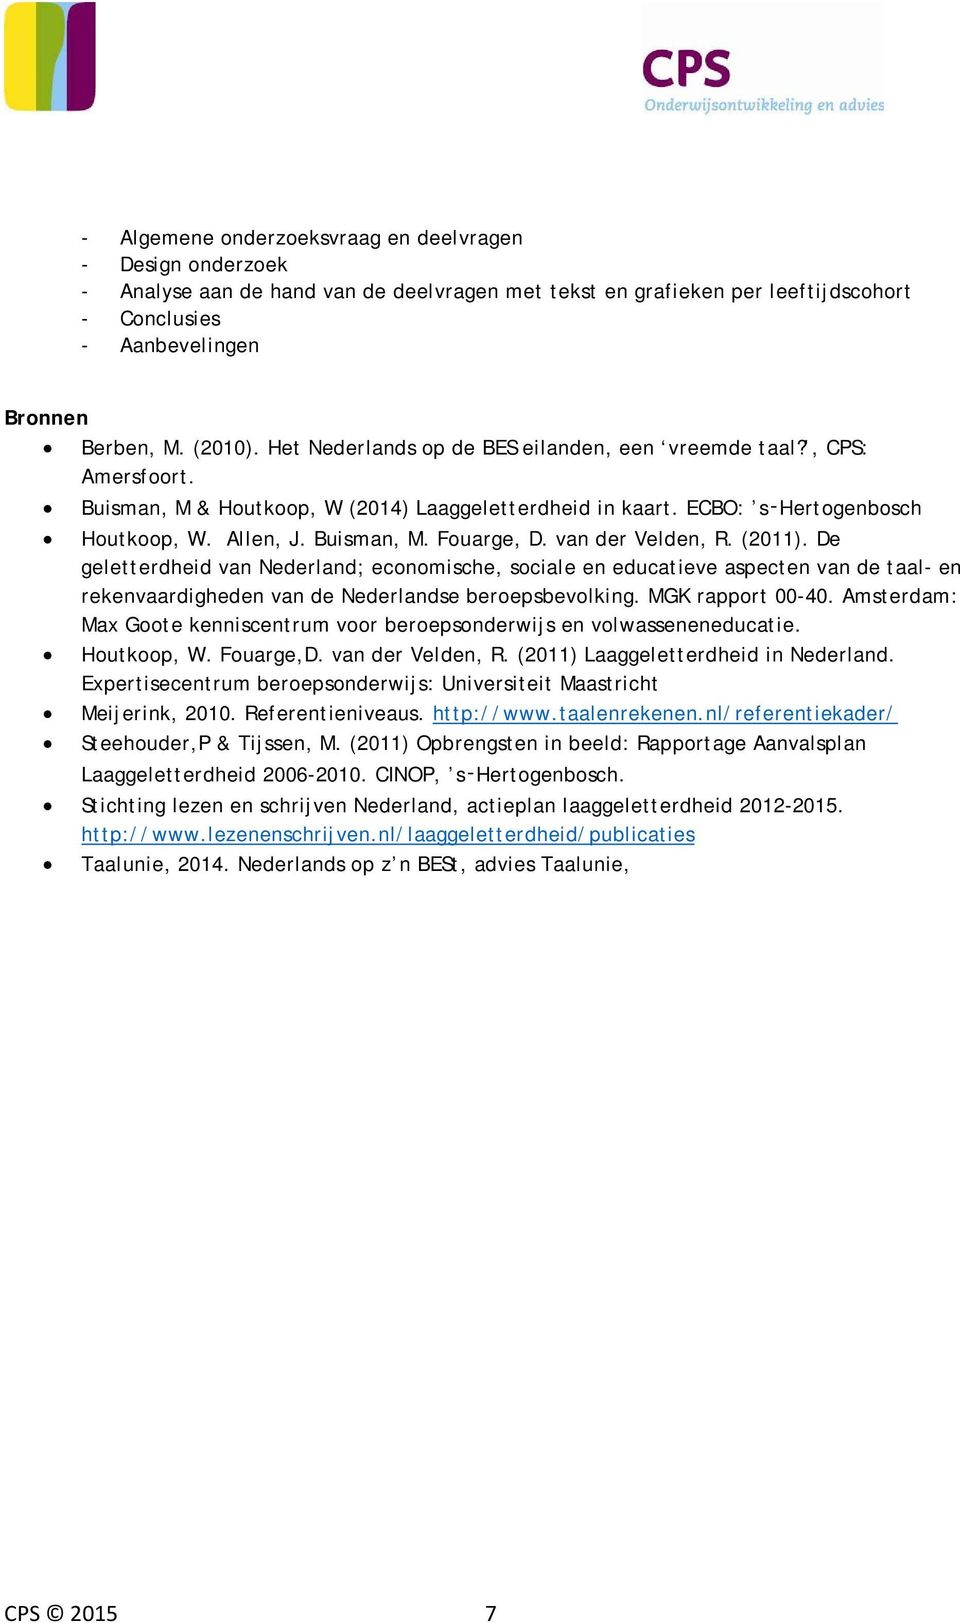 van der Velden, R. (2011). De geletterdheid van Nederland; economische, sociale en educatieve aspecten van de taal- en rekenvaardigheden van de Nederlandse beroepsbevolking. MGK rapport 00-40.